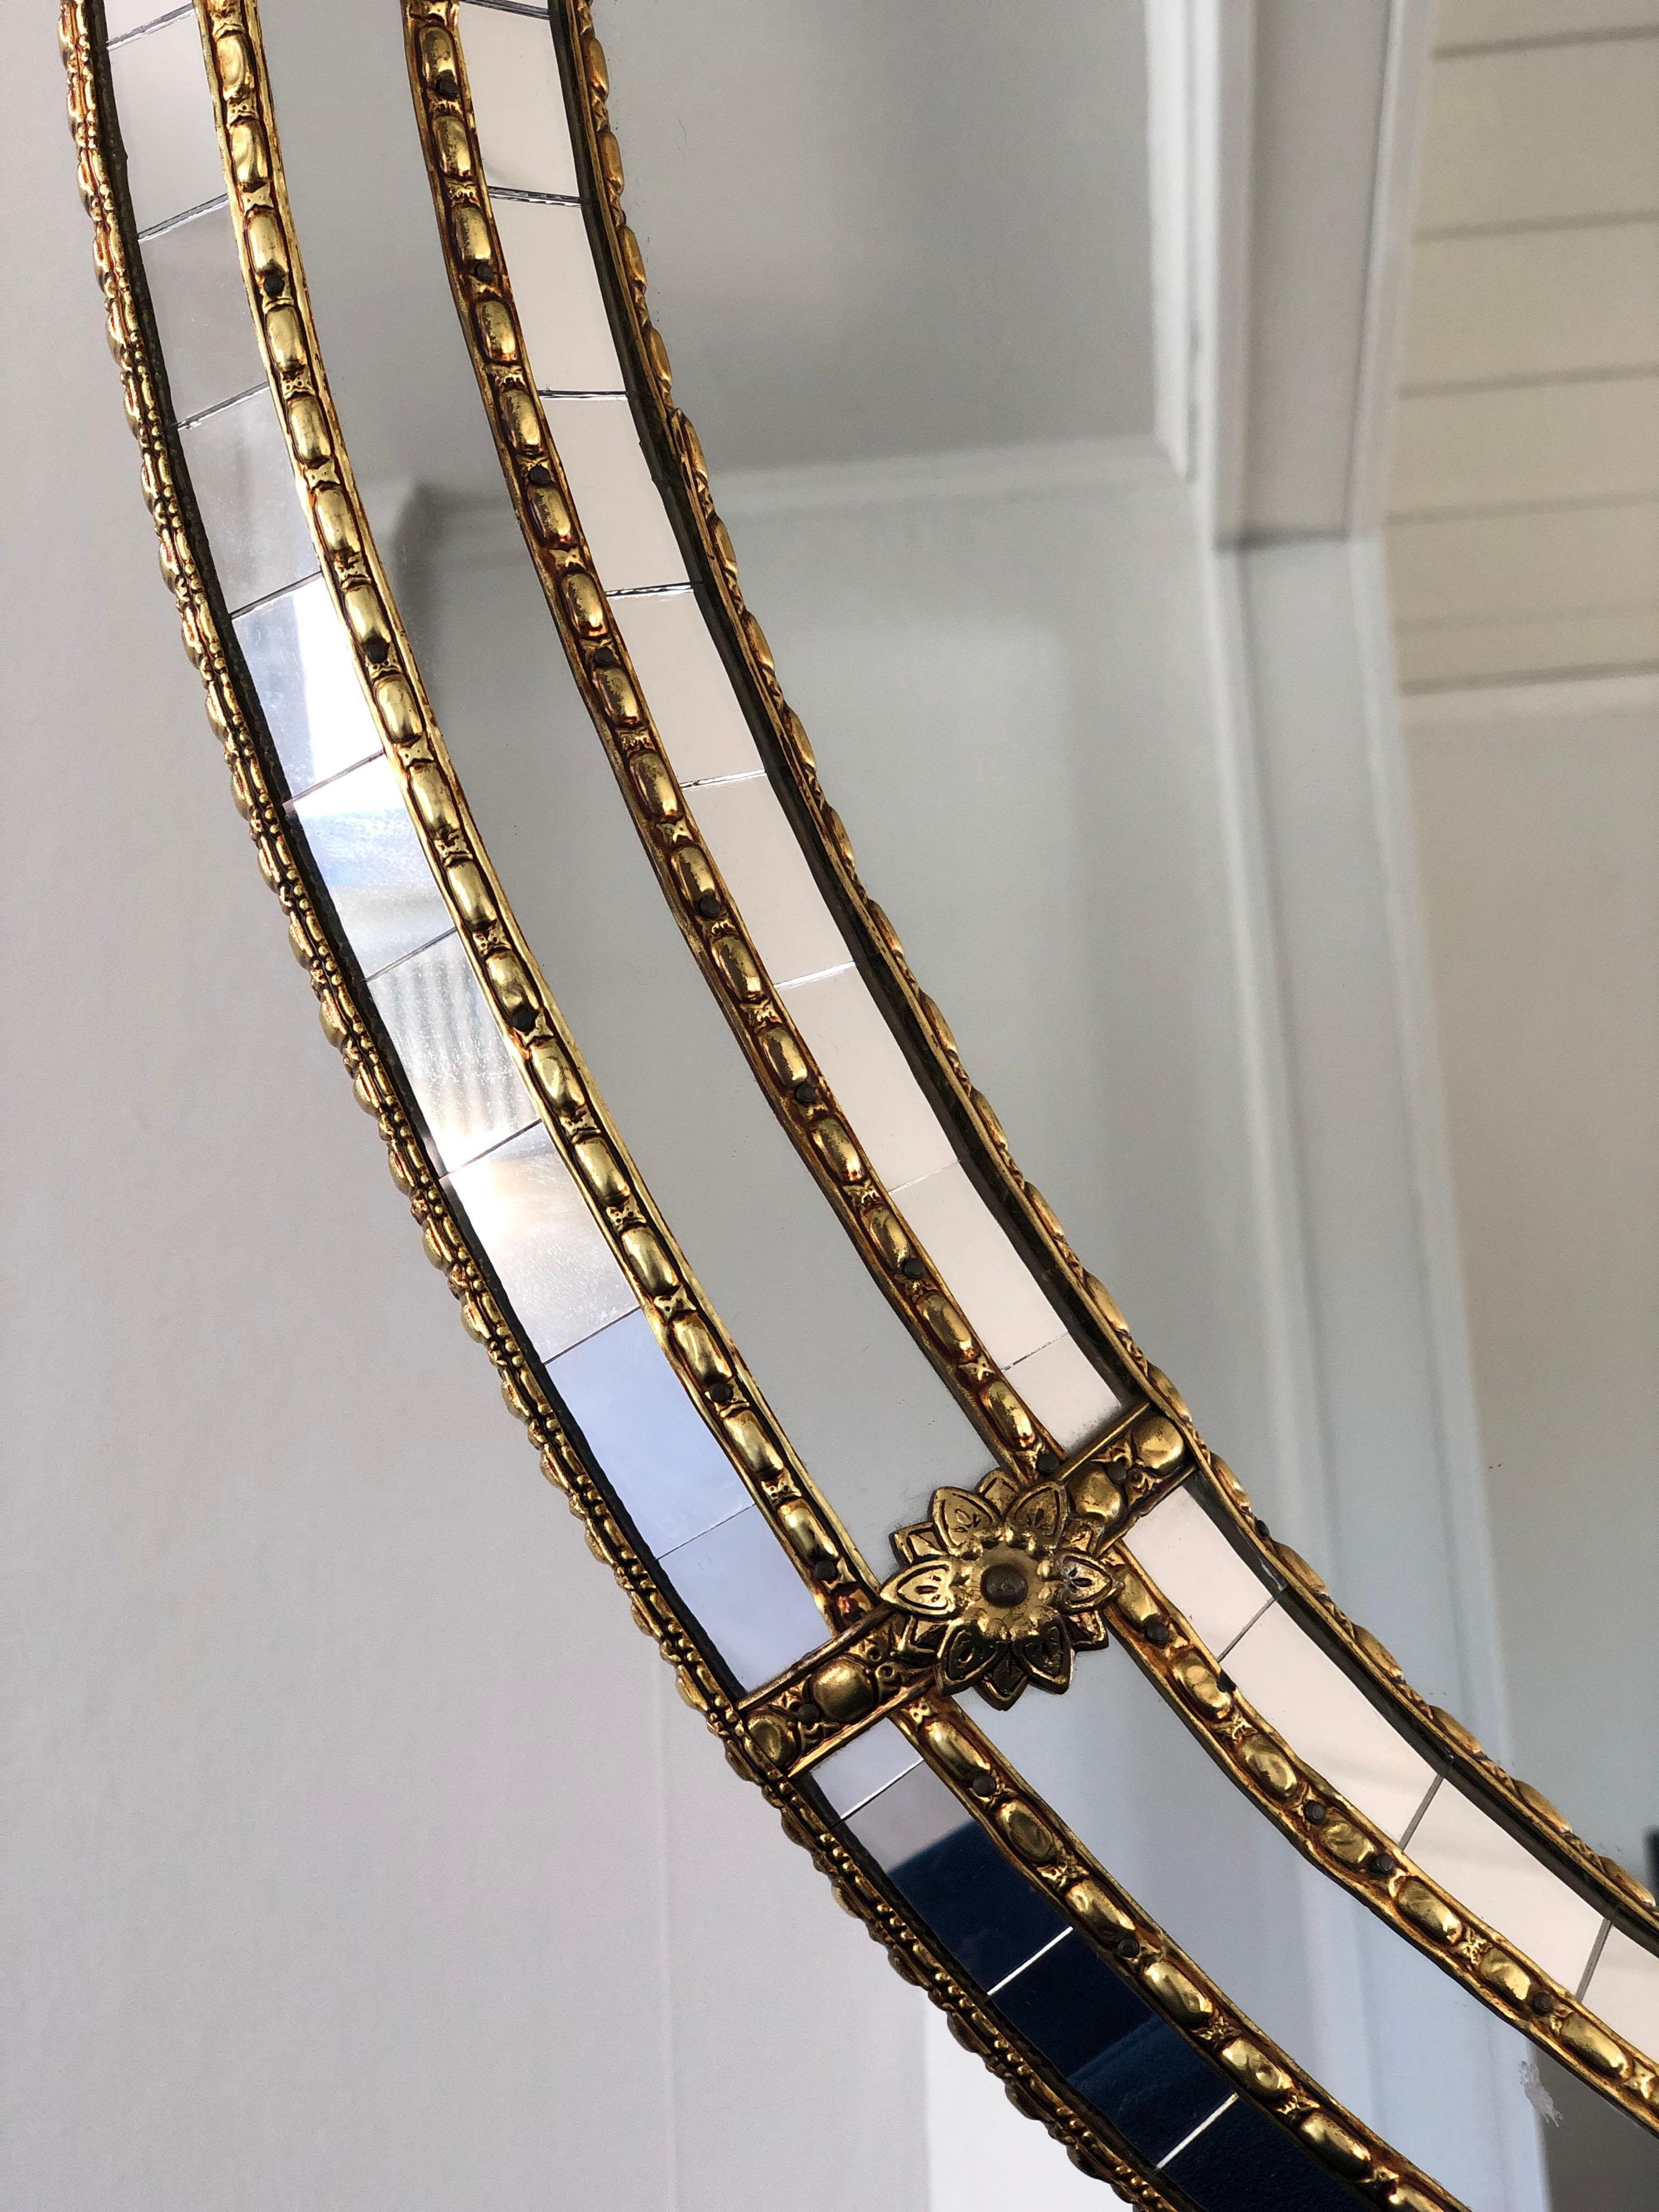 Magnifique miroir espagnol ovale avec un cadre en verre vénitien avec une bande dorée en laiton. Le cadre est composé de petits cristaux à l'extérieur et à l'intérieur, et de cristaux plus grands dans la ligne centrale. La bande de laiton maintient